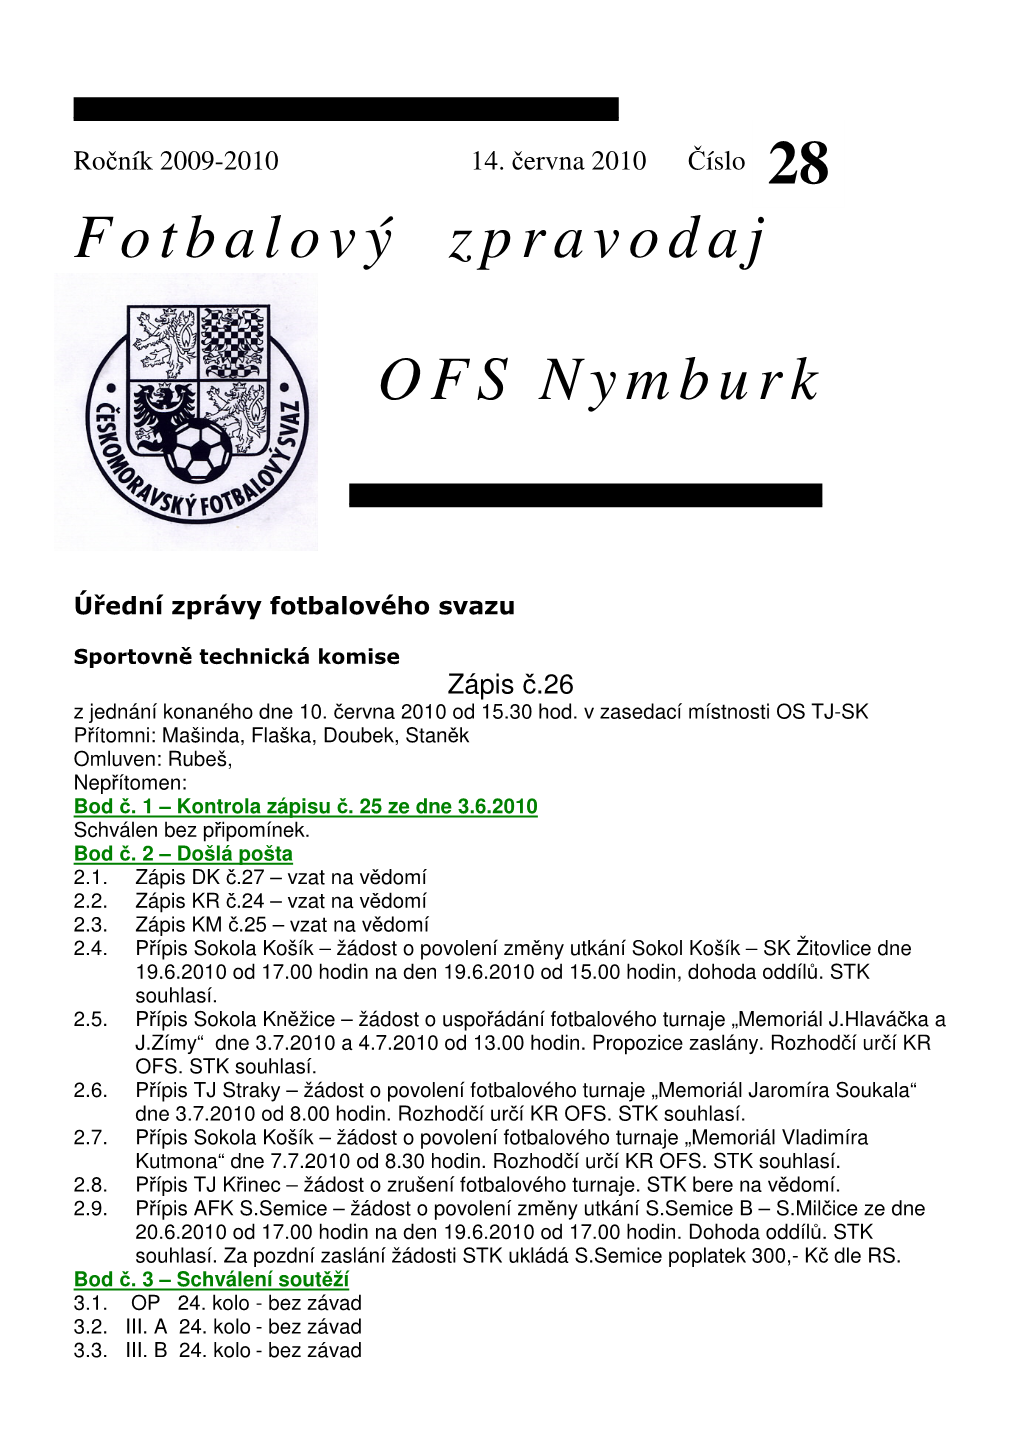 Fotbalový Zpravodaj OFS Nymburk 28